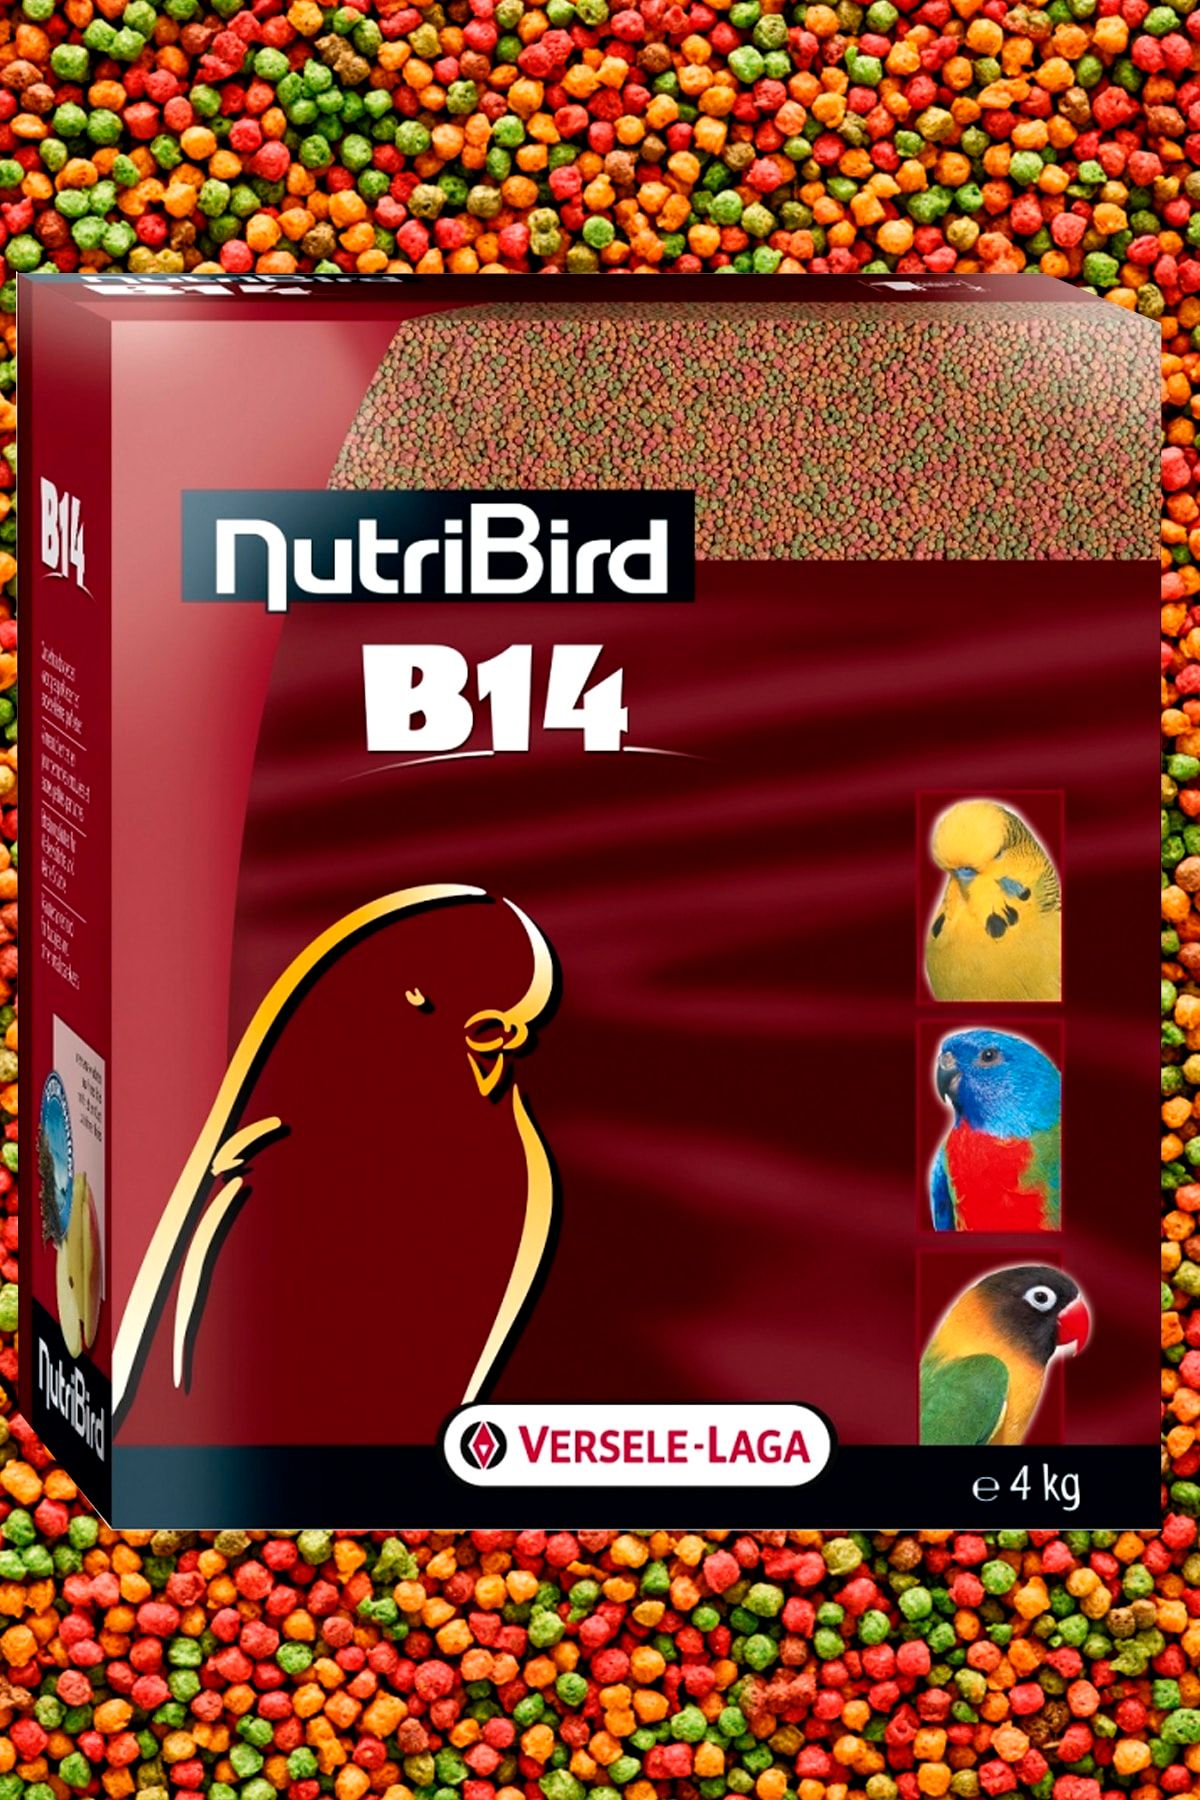 Versele Laga Nutribird B14 Muhabbet Kuşları Meyveli Pelet Yem 1 Kg (kutudan Bölünme)